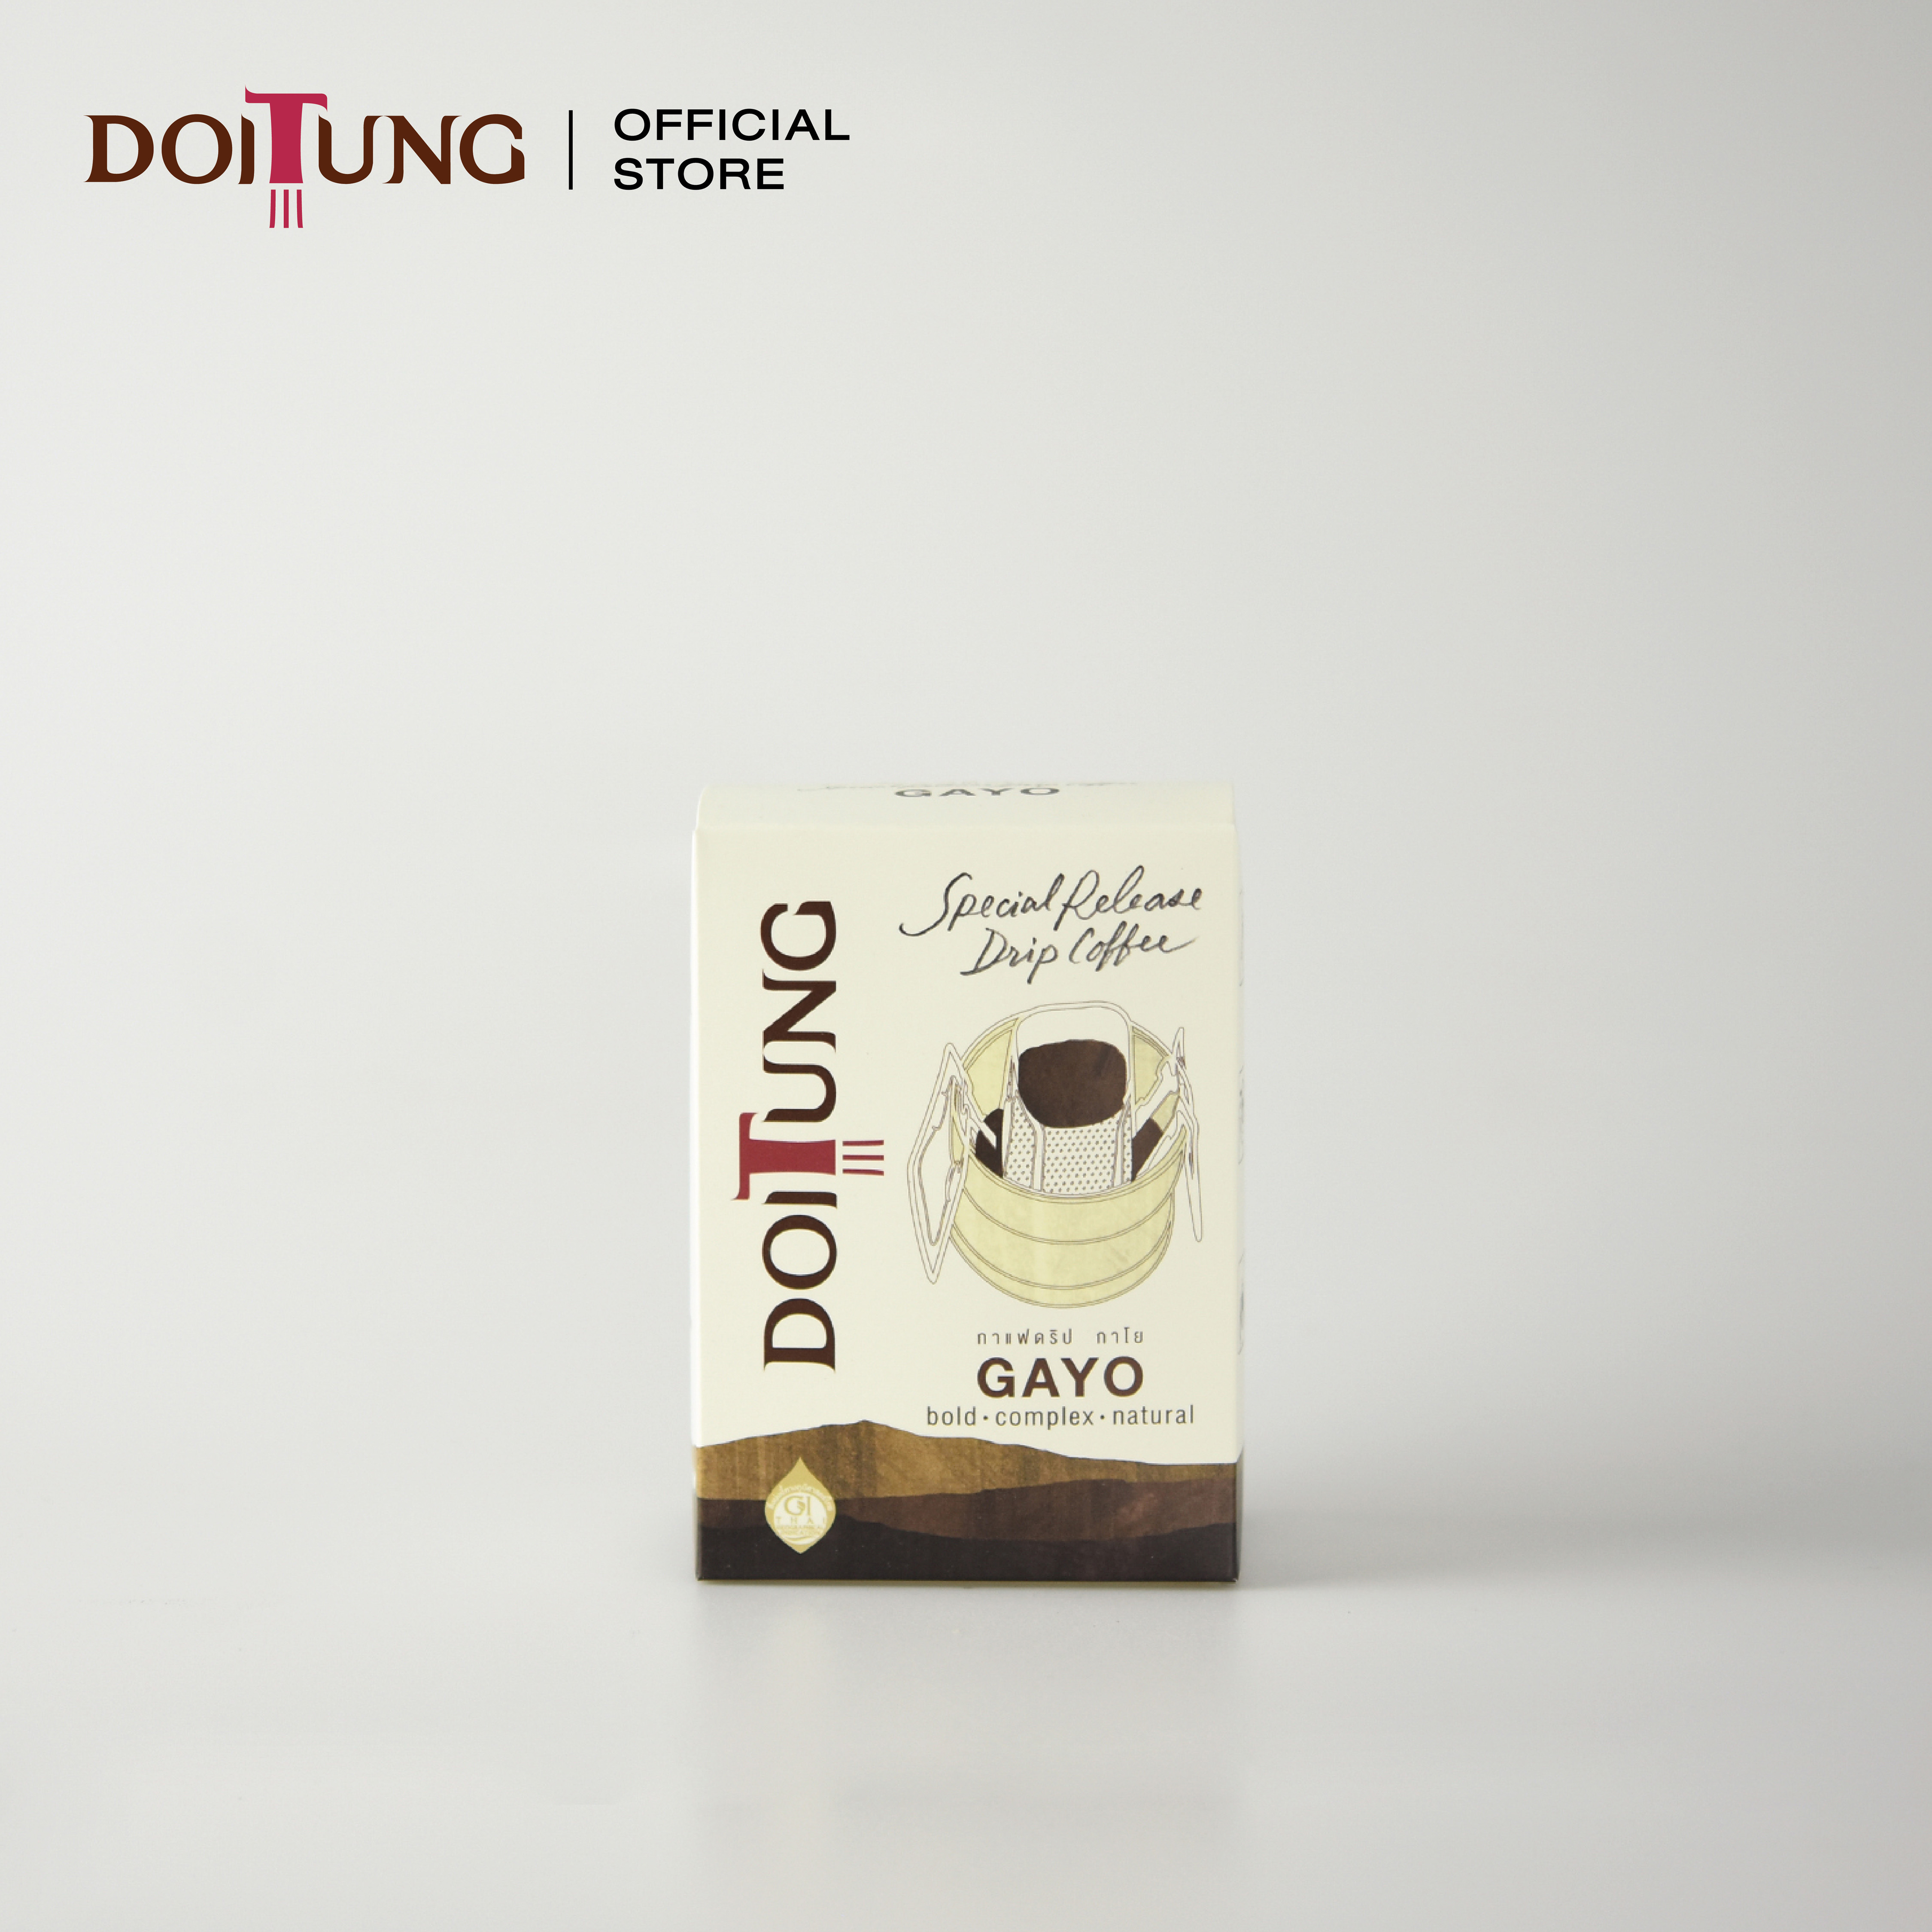 DoiTung Drip Coffee - Gayo (60 g.) กาแฟ ดริป กาโย ดอยตุง